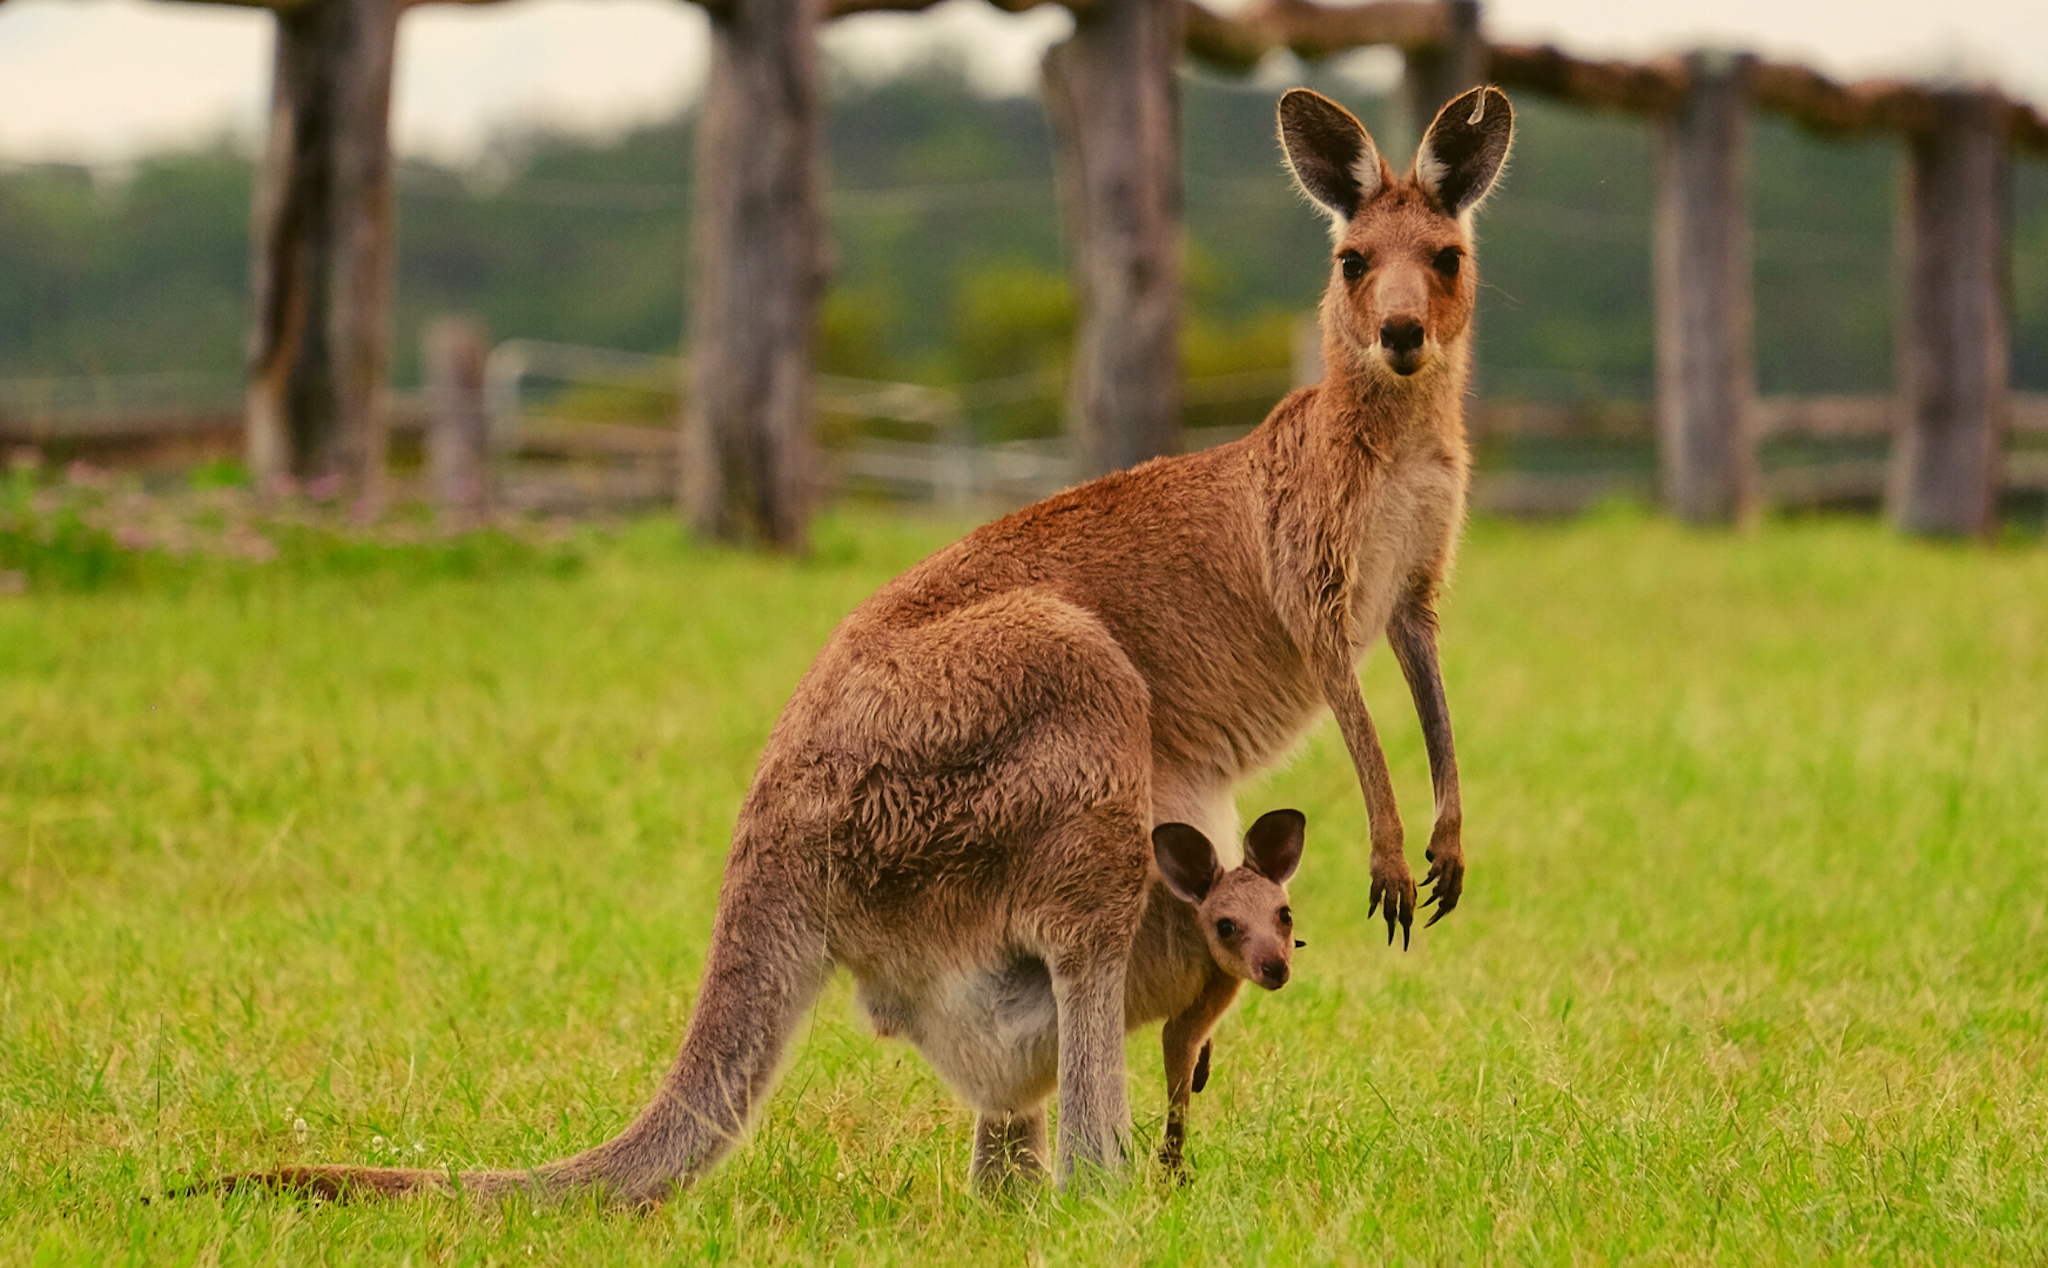 Dù là biểu tượng, Kangaroo vẫn được săn bắn hợp pháp ở Úc để lấy thịt và da